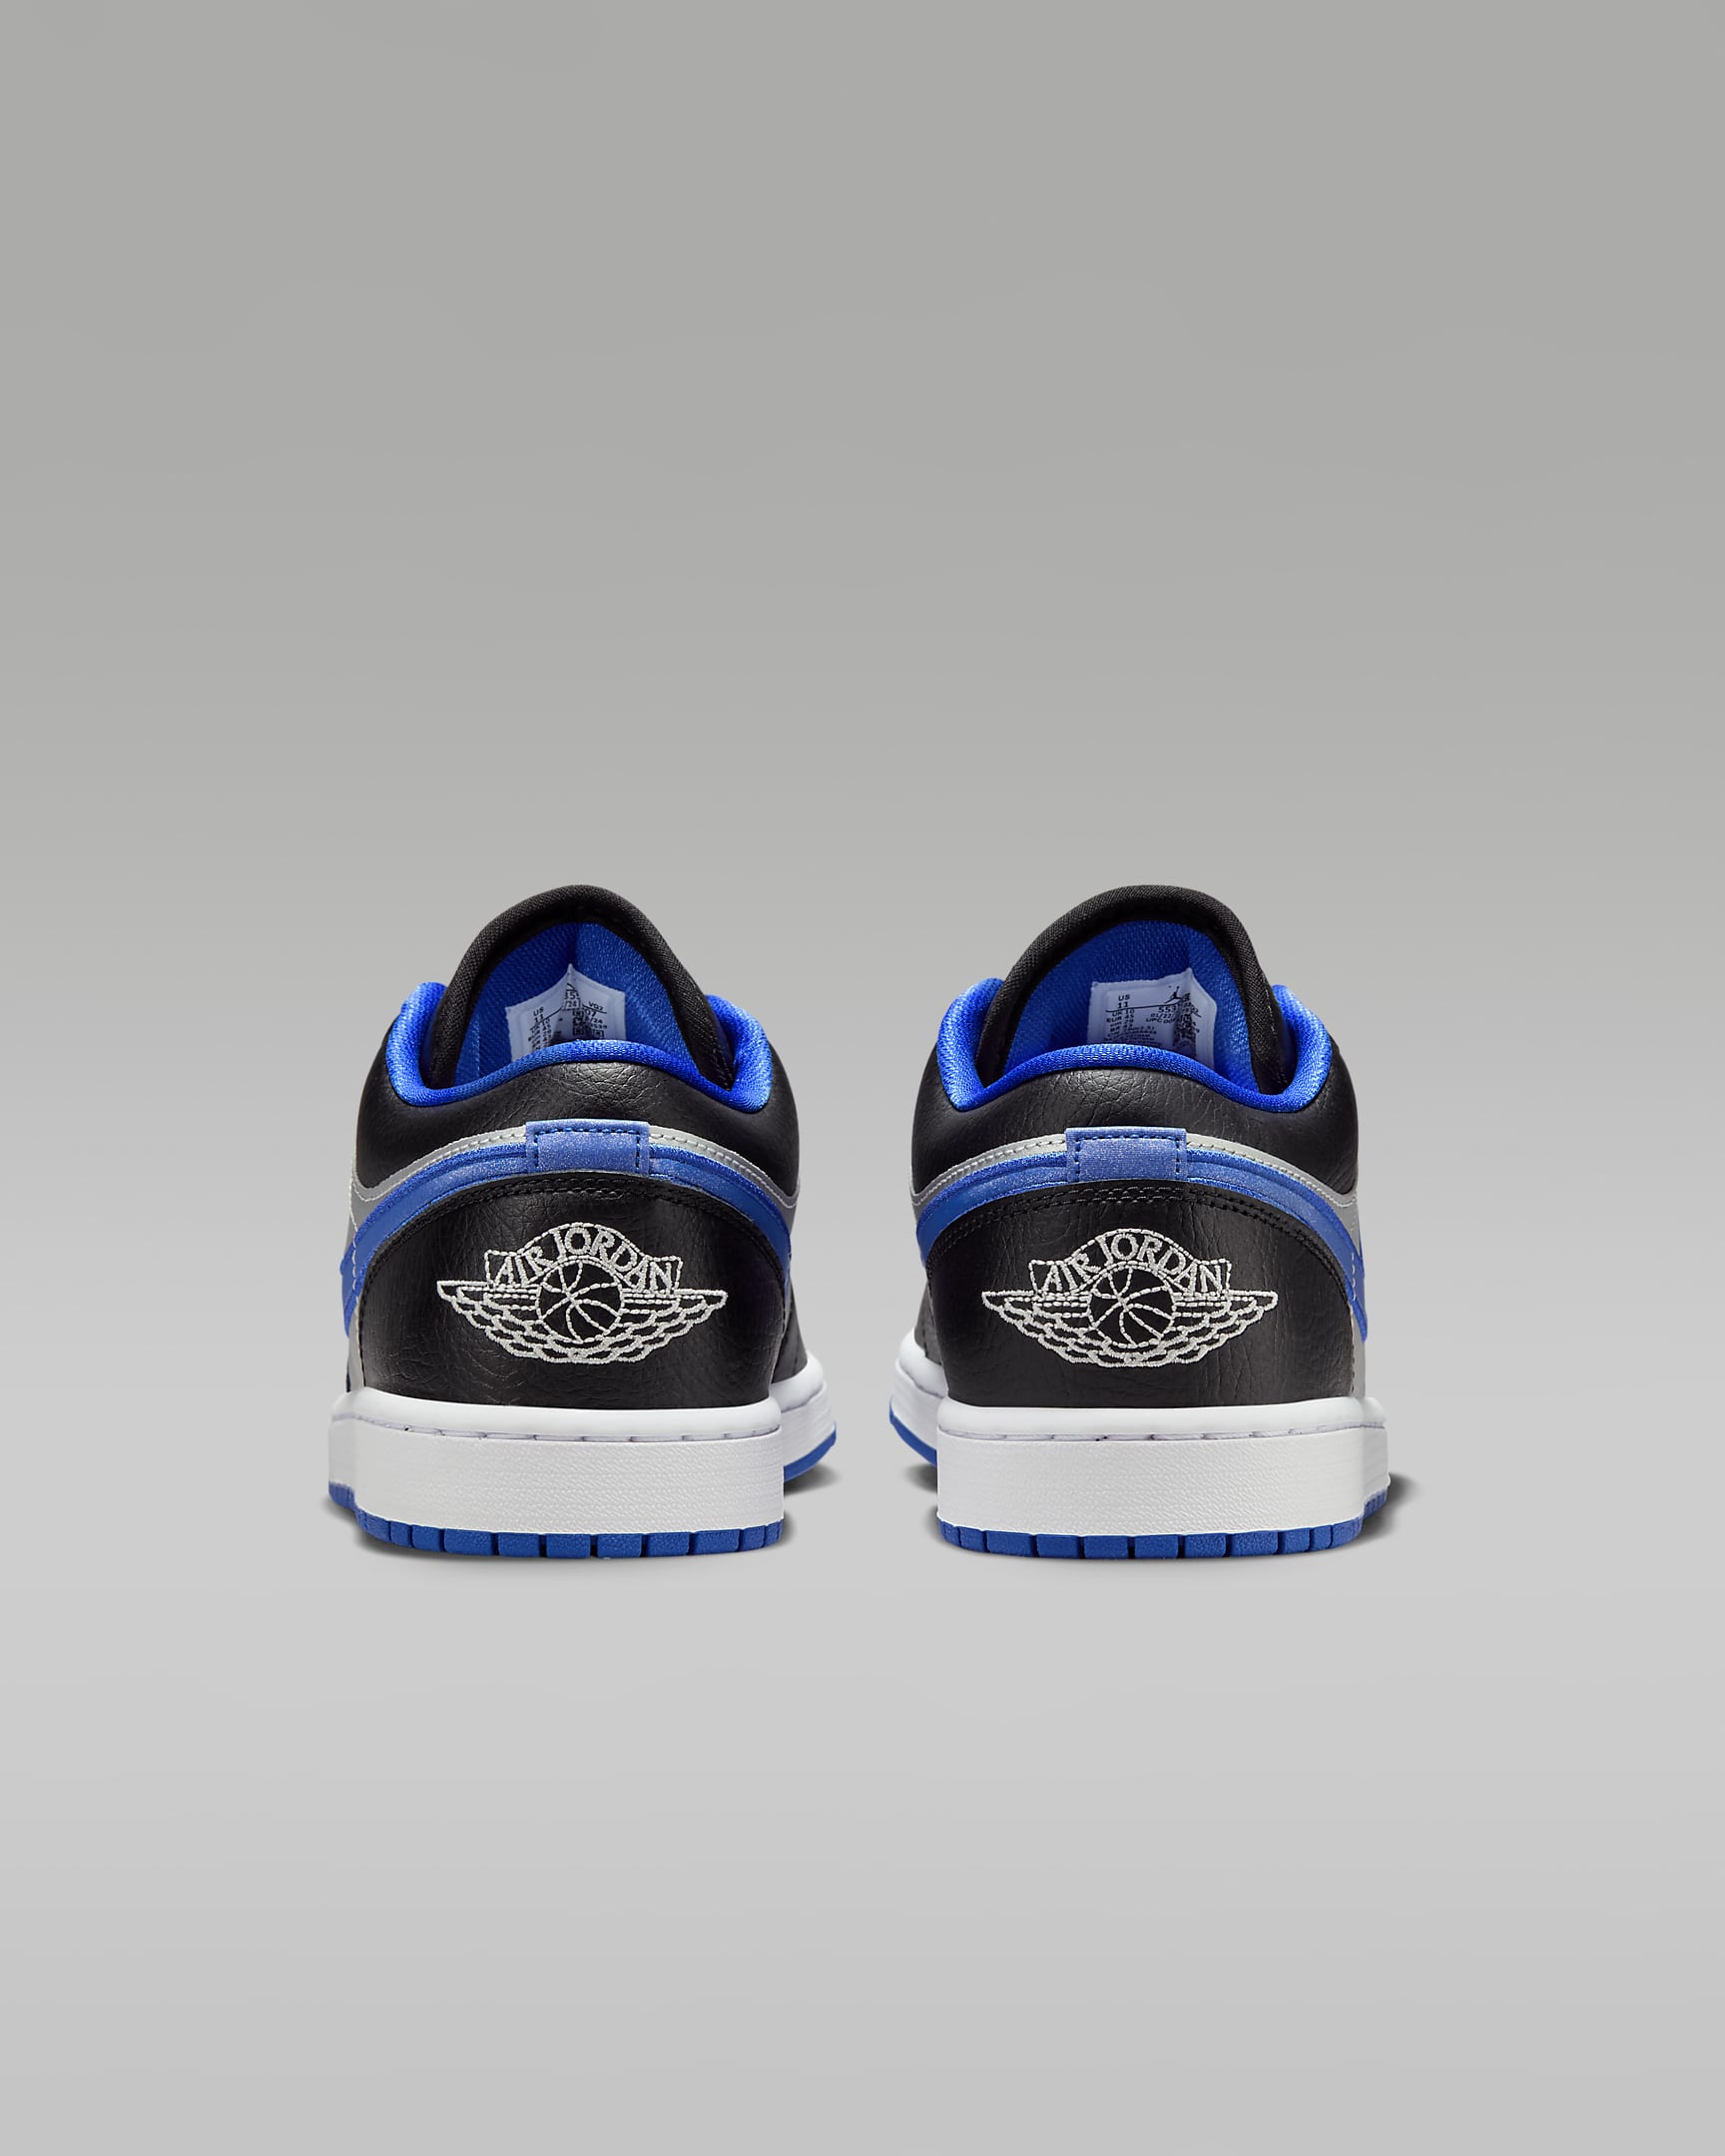 Air Jordan 1 Low Men's Shoes - Black/Game Royal/Metallic Platinum/White